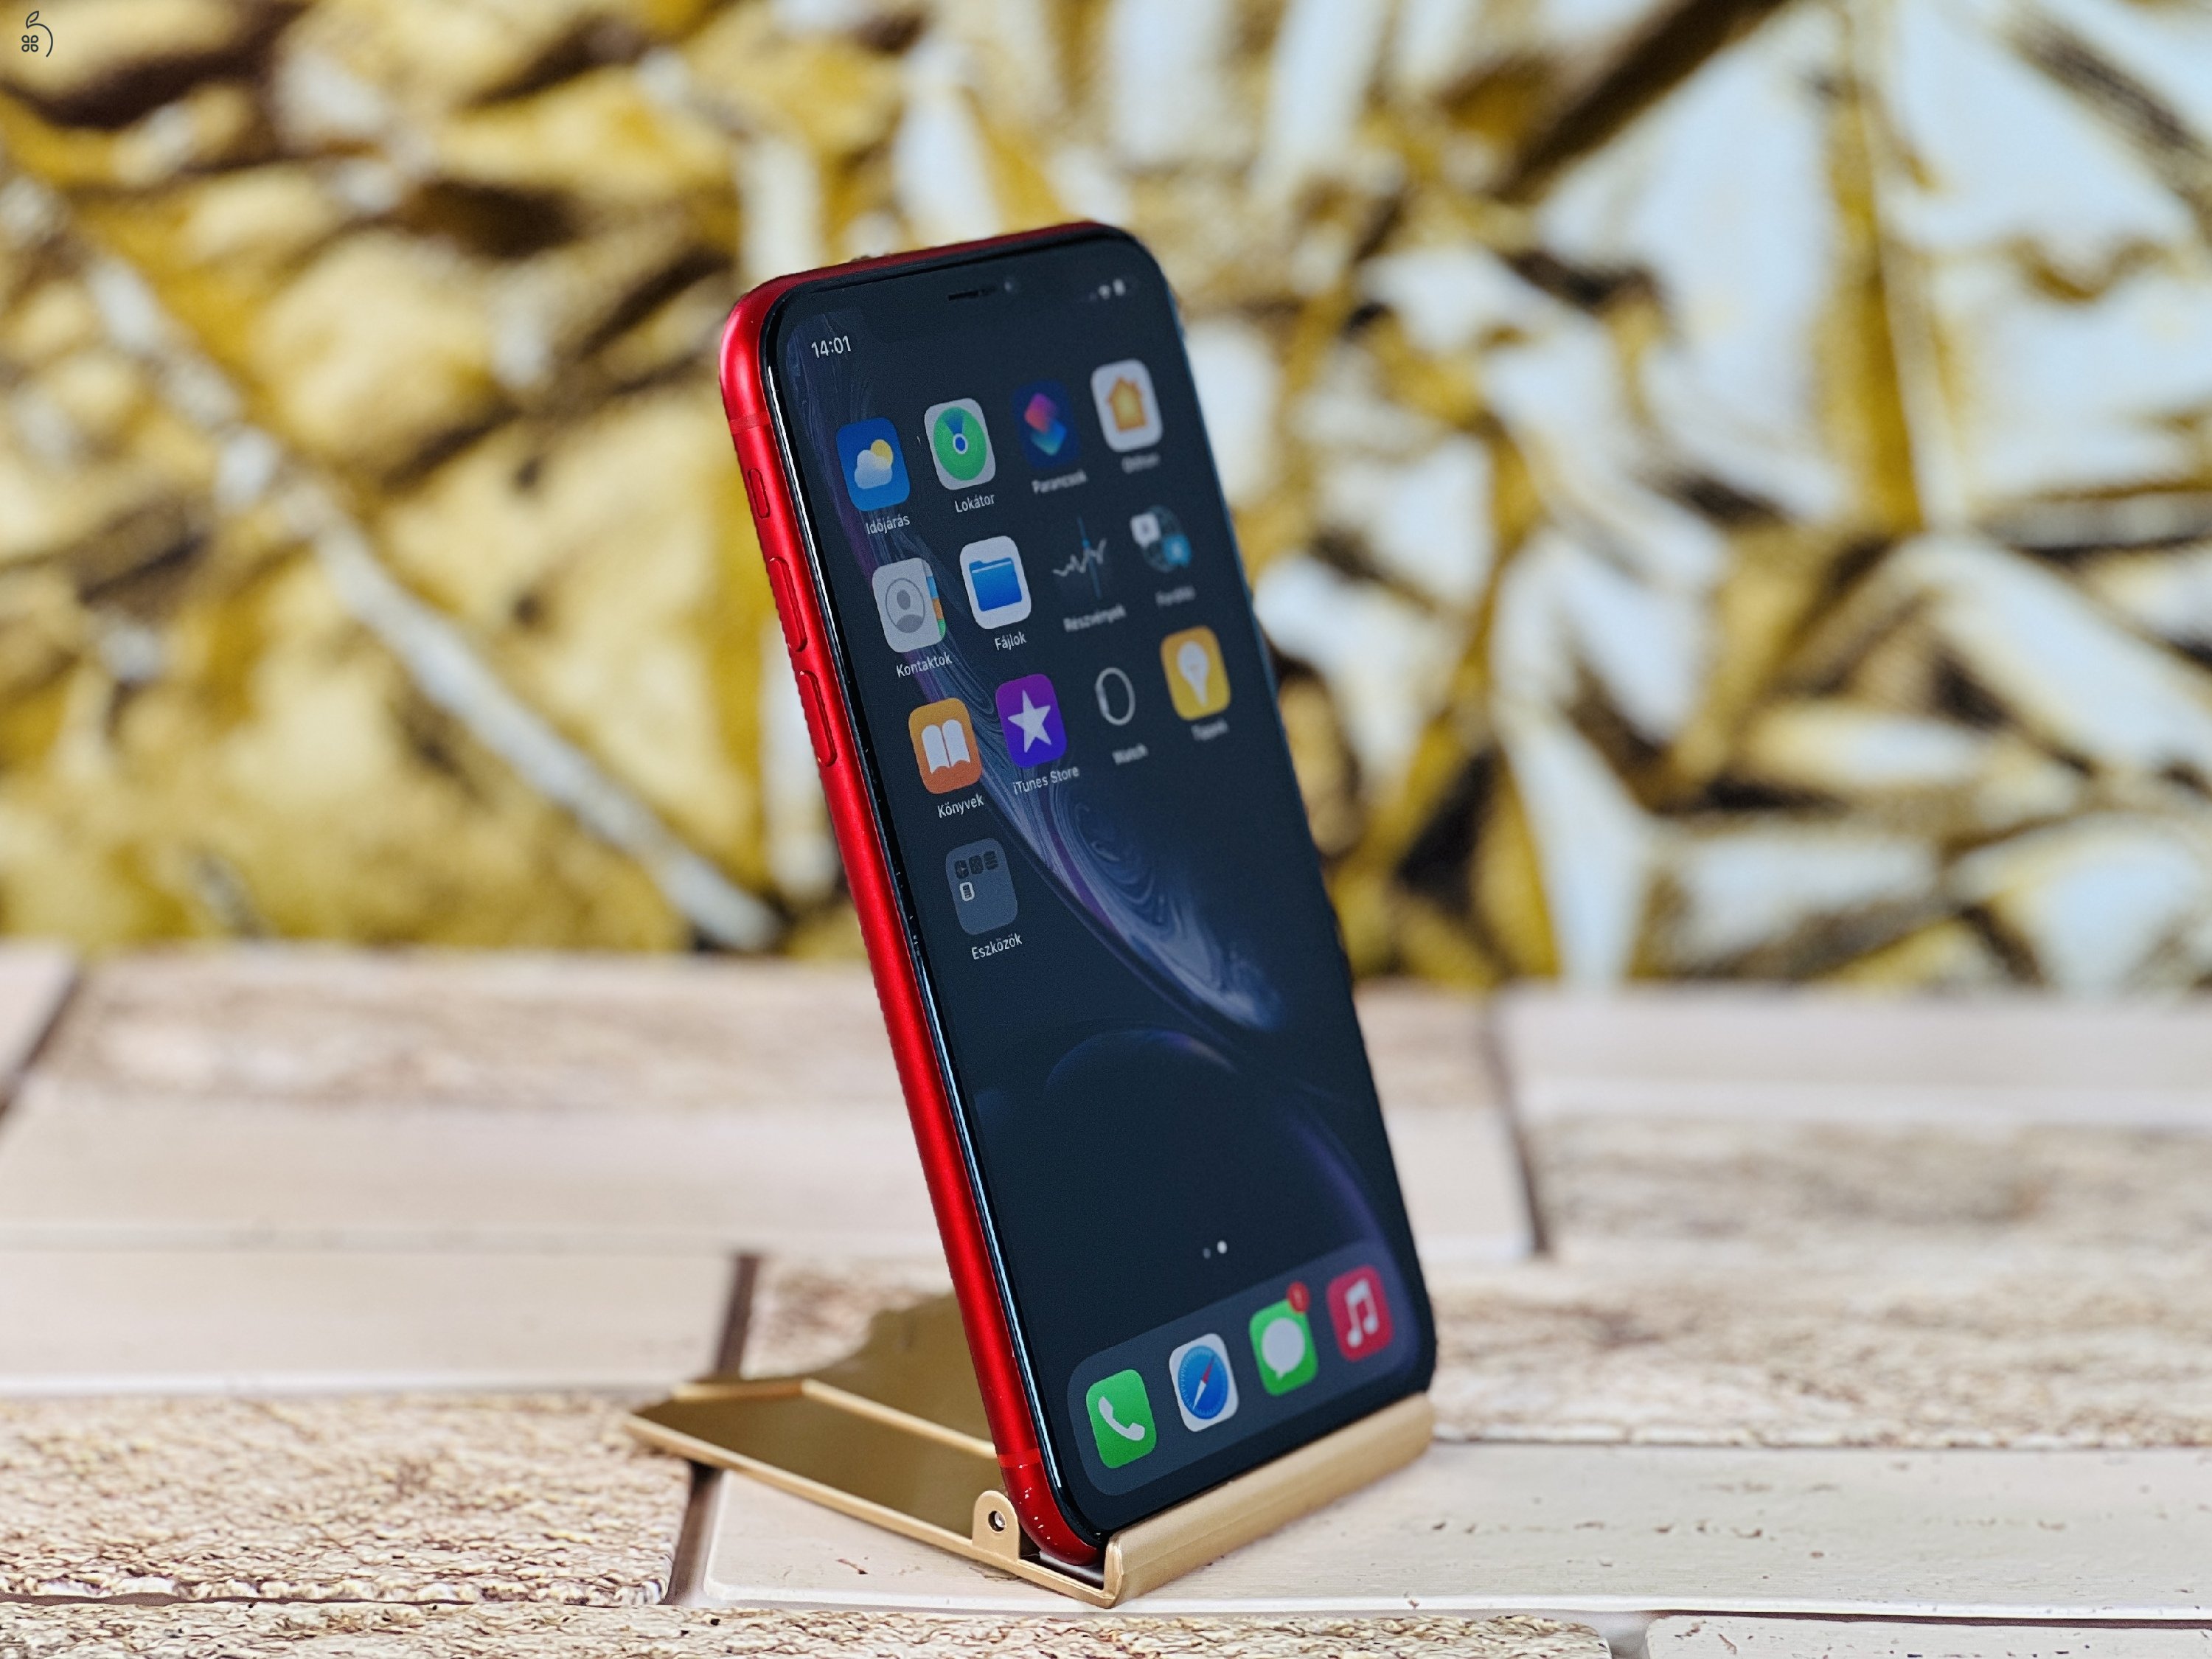 Eladó iPhone XR 128 GB PRODUCT RED szép állapotú - 12 HÓ GARANCIA - S1821